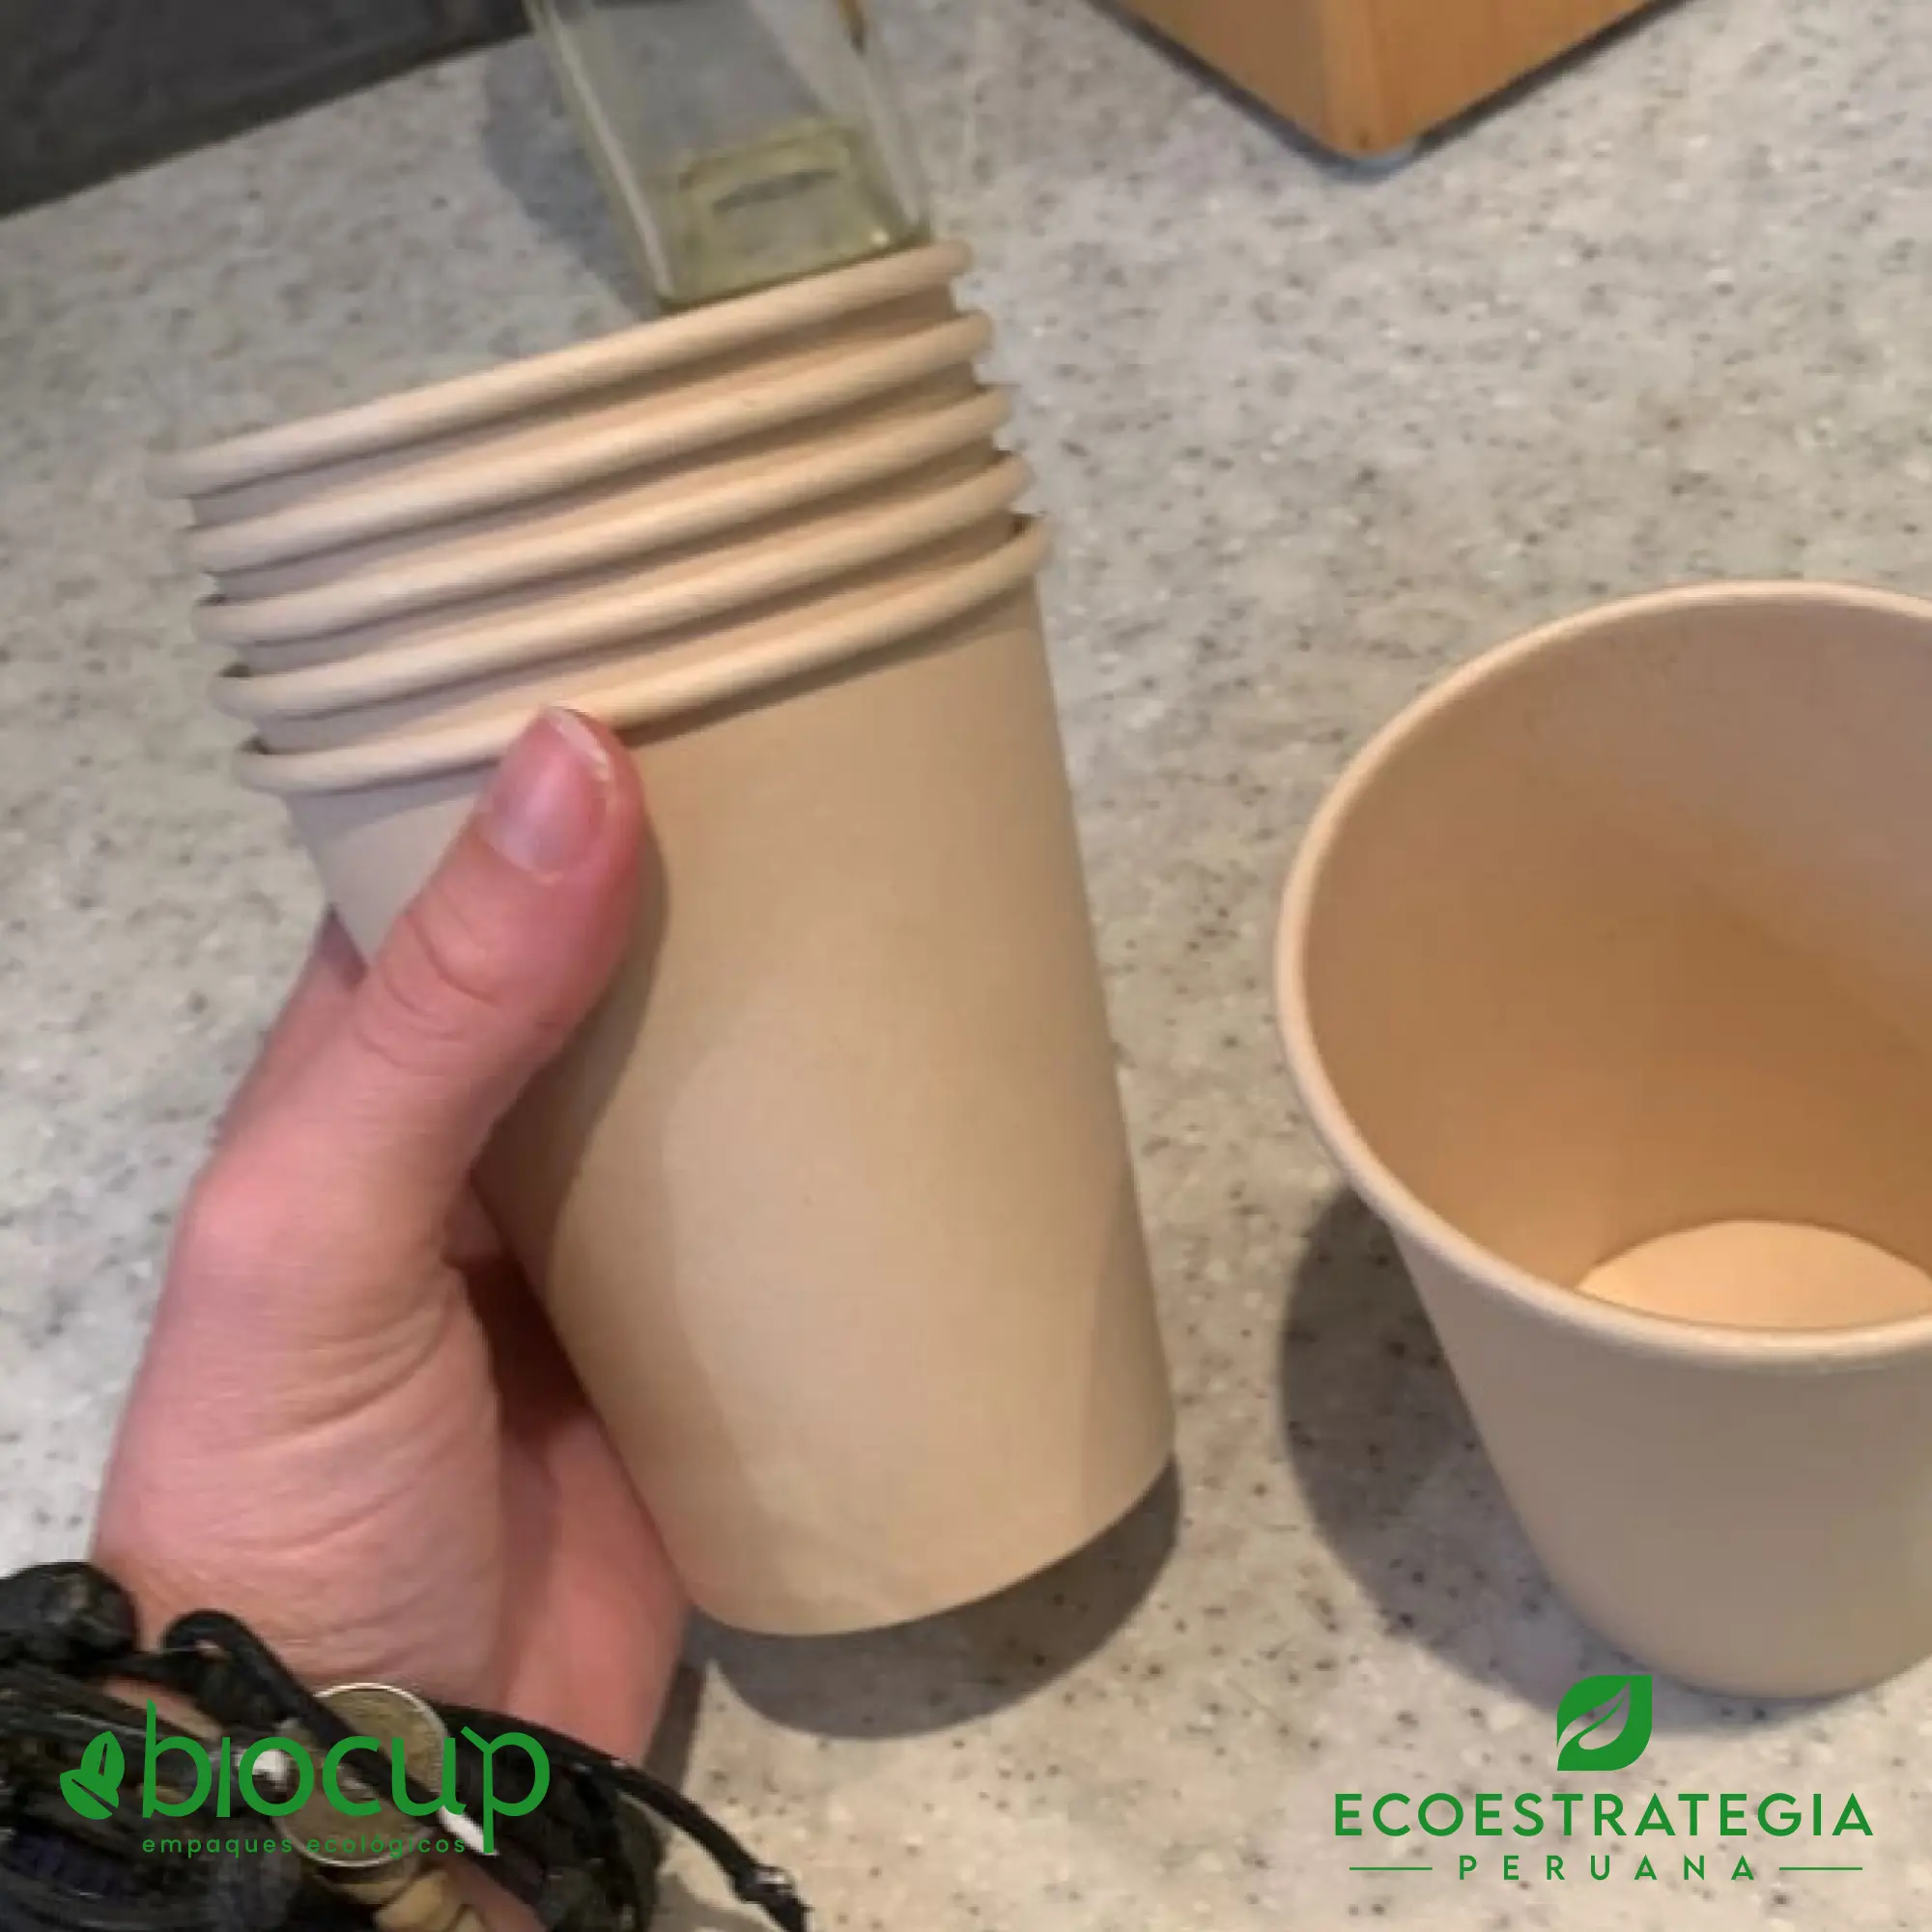 El vaso biodegradable de 10oz EP-B10, conocido como vasos de bambú biodegradables 10 oz, vasos compostable 10 oz, vaso desechable bambú, vasos biodegradable de bambú por mayor, vaso compostable 10 oz , vaso bambú, vaso bioform 10 oz, vaso bioform 12 oz, vaso pamolsa biodegradable, vaso por mayor, vaso compostable marrón, vasos para café Perú, vasos personalizable biodegradable, vaso hermético para delivery, vasos biodegradables para delivery, mayoristas de vasos biodegradables, distribuidores de vasos biodegradables, importadores de vasos biodegradables, vasos biodegradables eco estrategia peruana